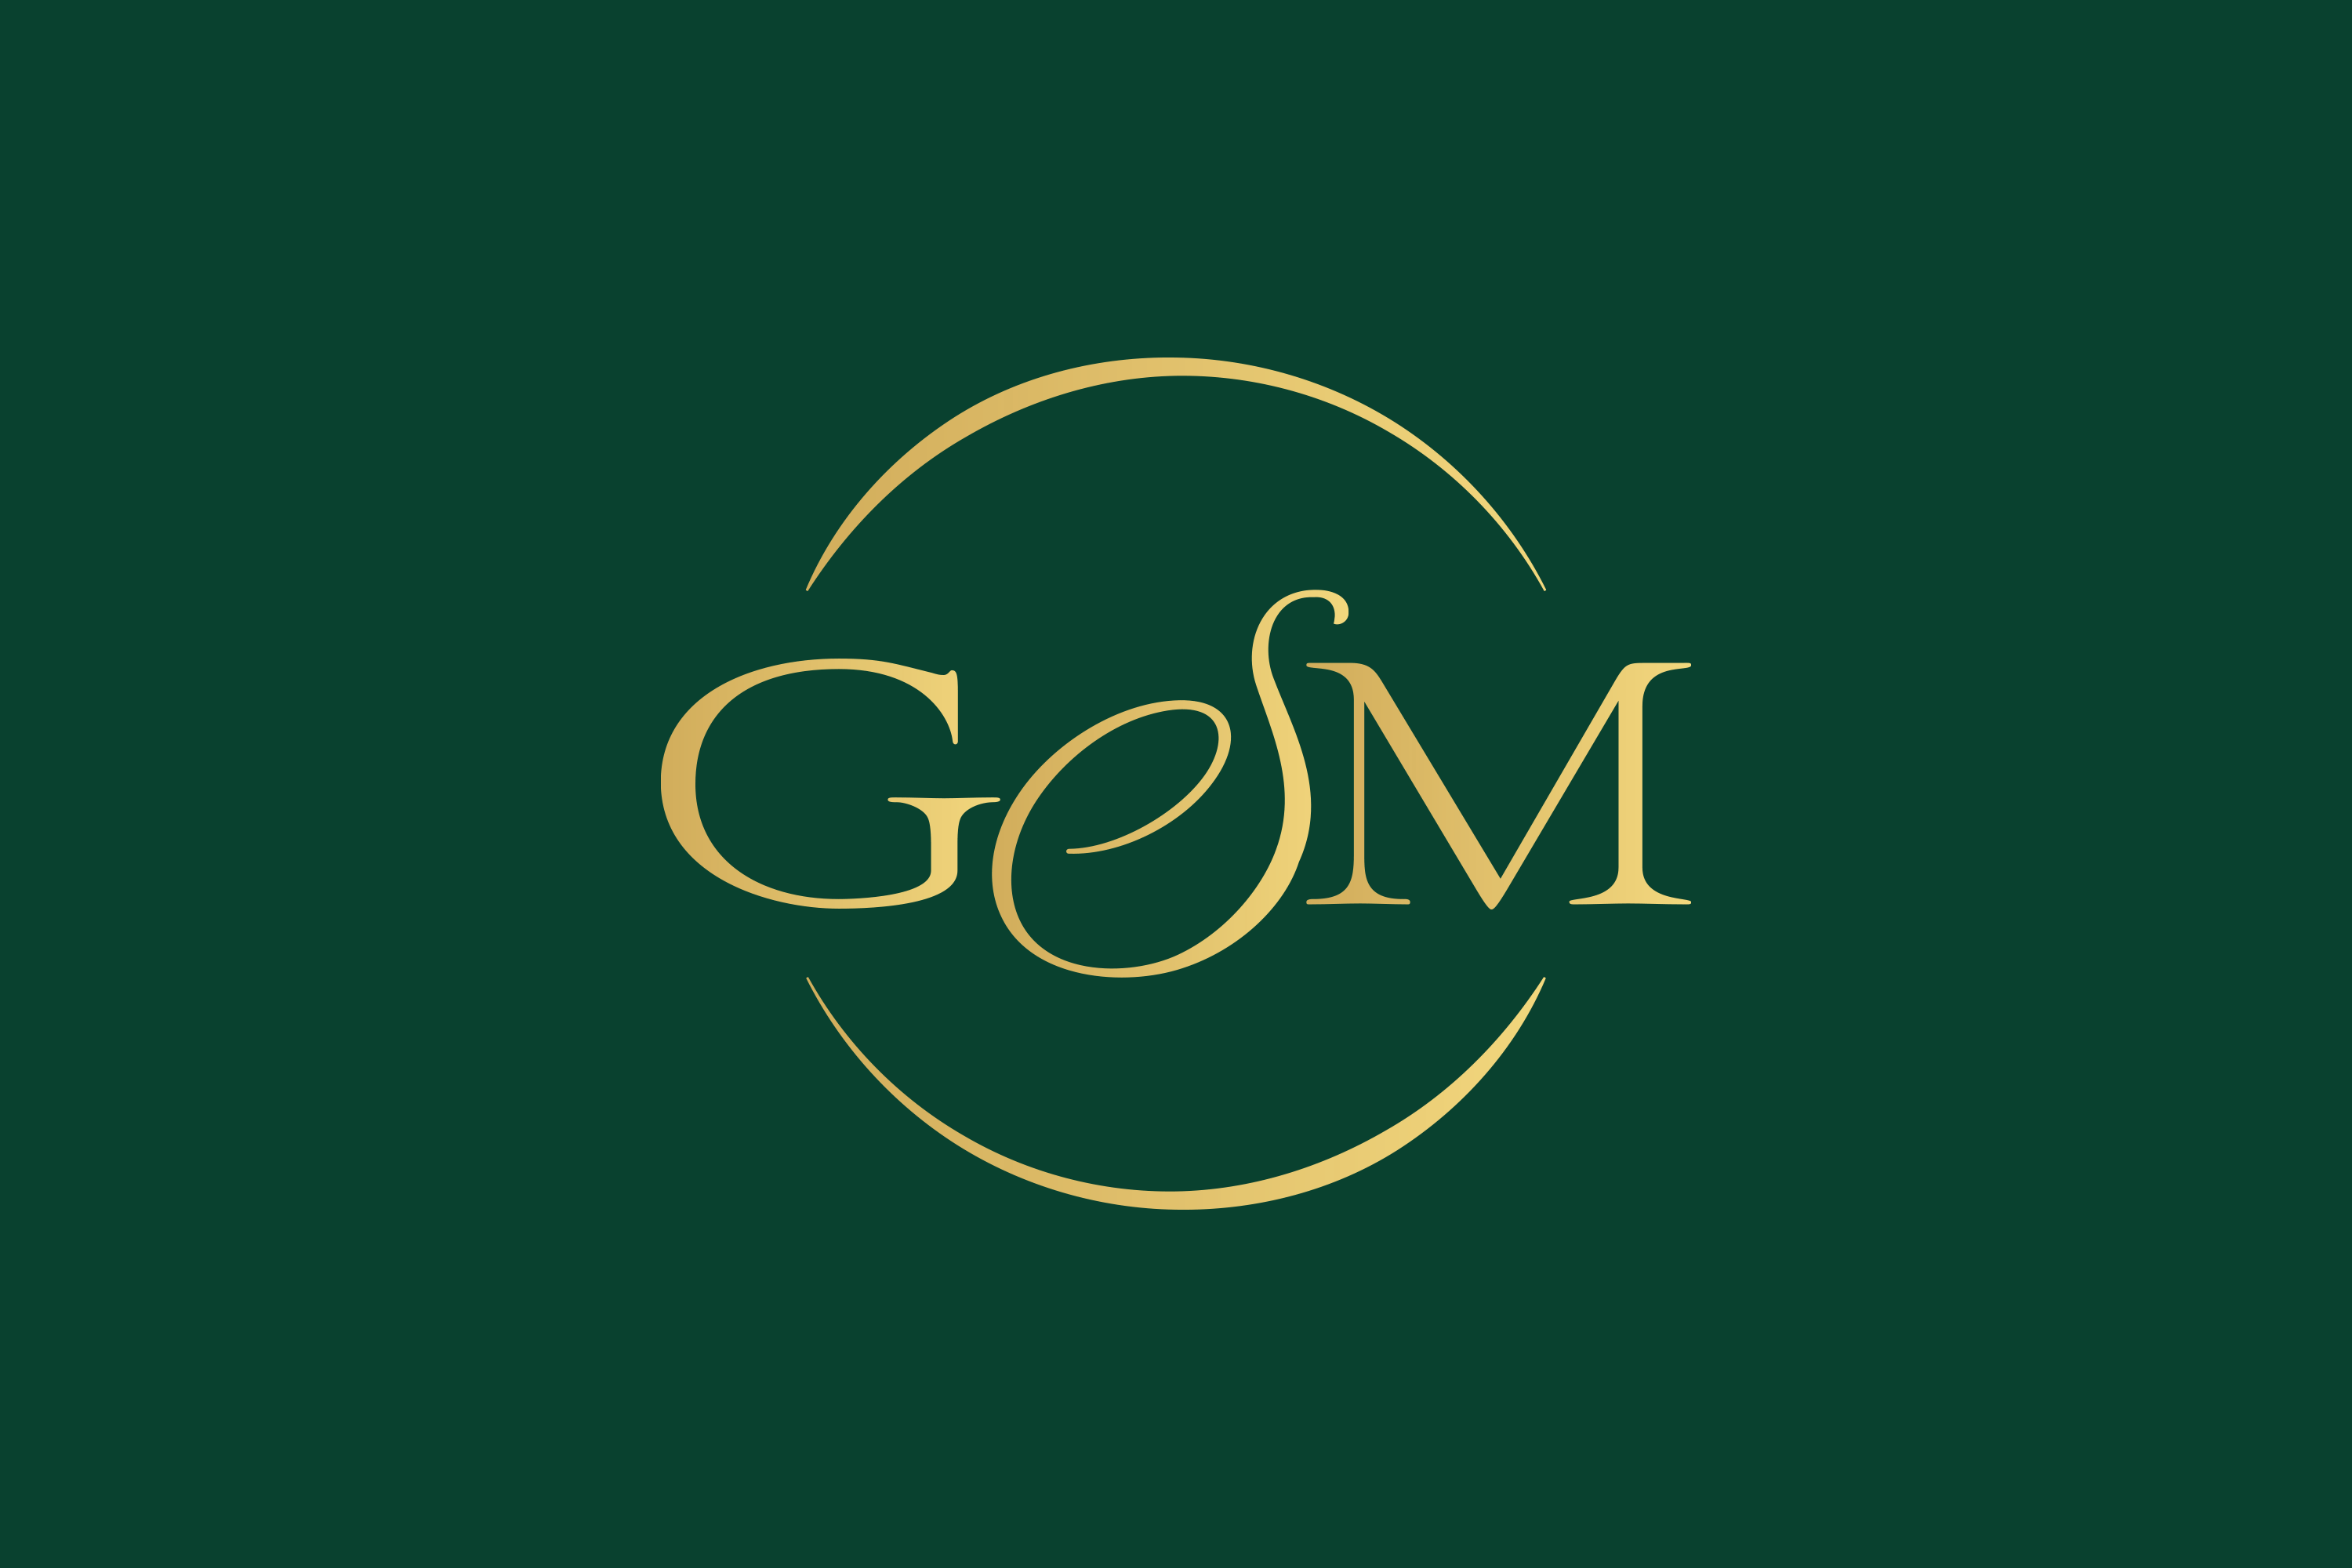 logo-design-gsm-initiale-simbol